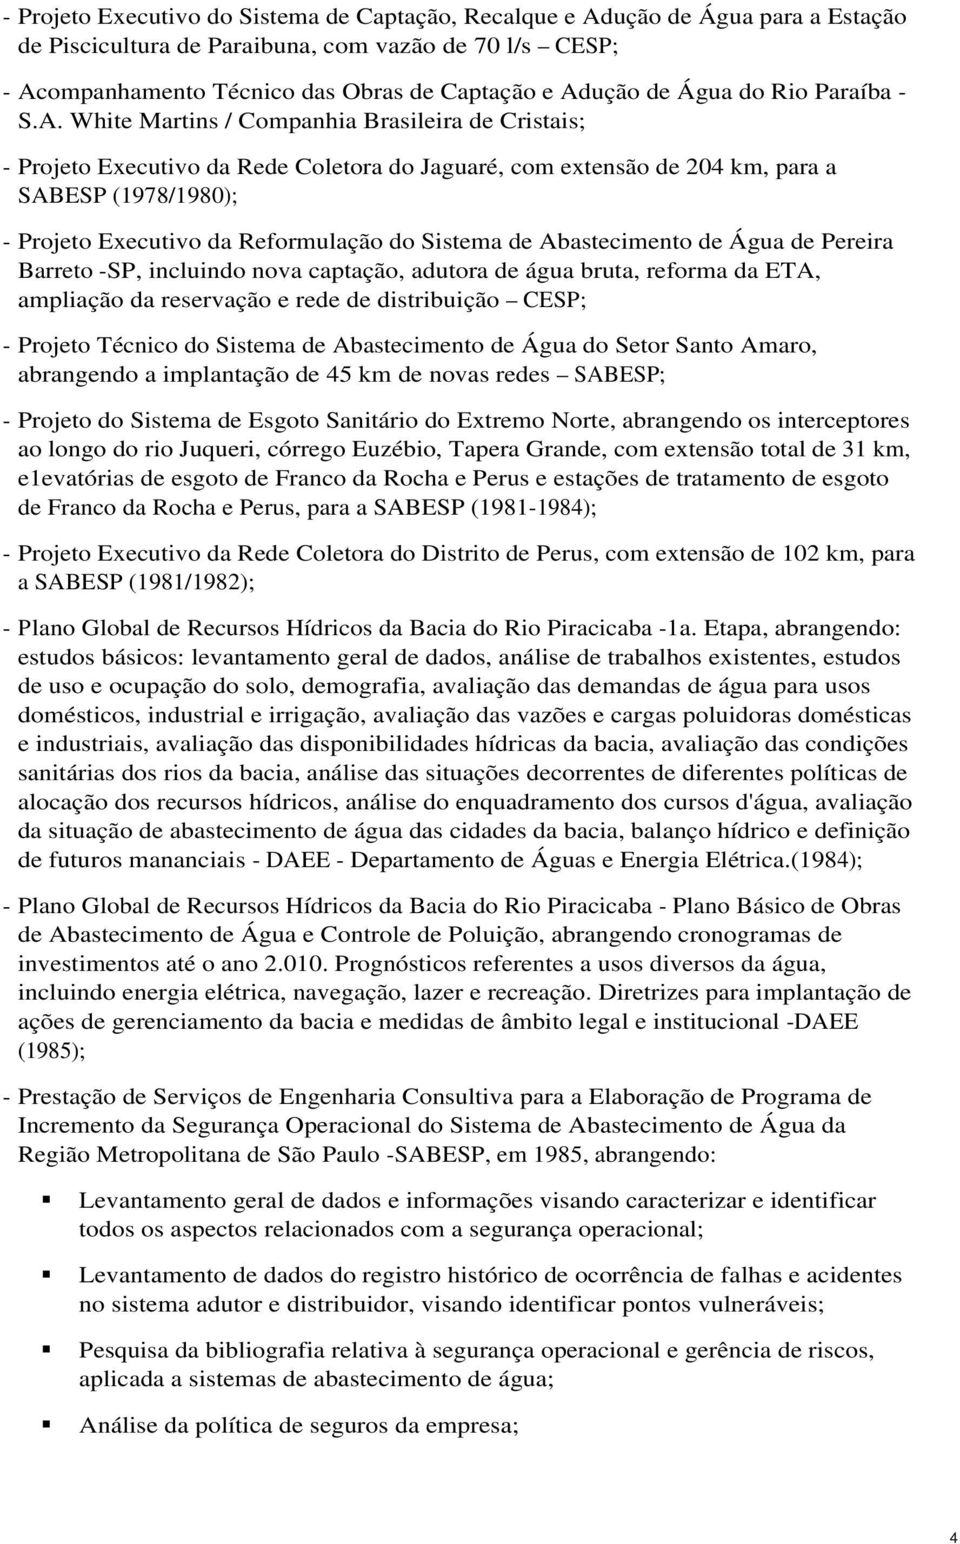 White Martins / Cmpanhia Brasileira de Cristais; - Prjet Executiv da Rede Cletra d Jaguaré, cm extensã de 204 km, para a SABESP (1978/1980); - Prjet Executiv da Refrmulaçã d Sistema de Abasteciment